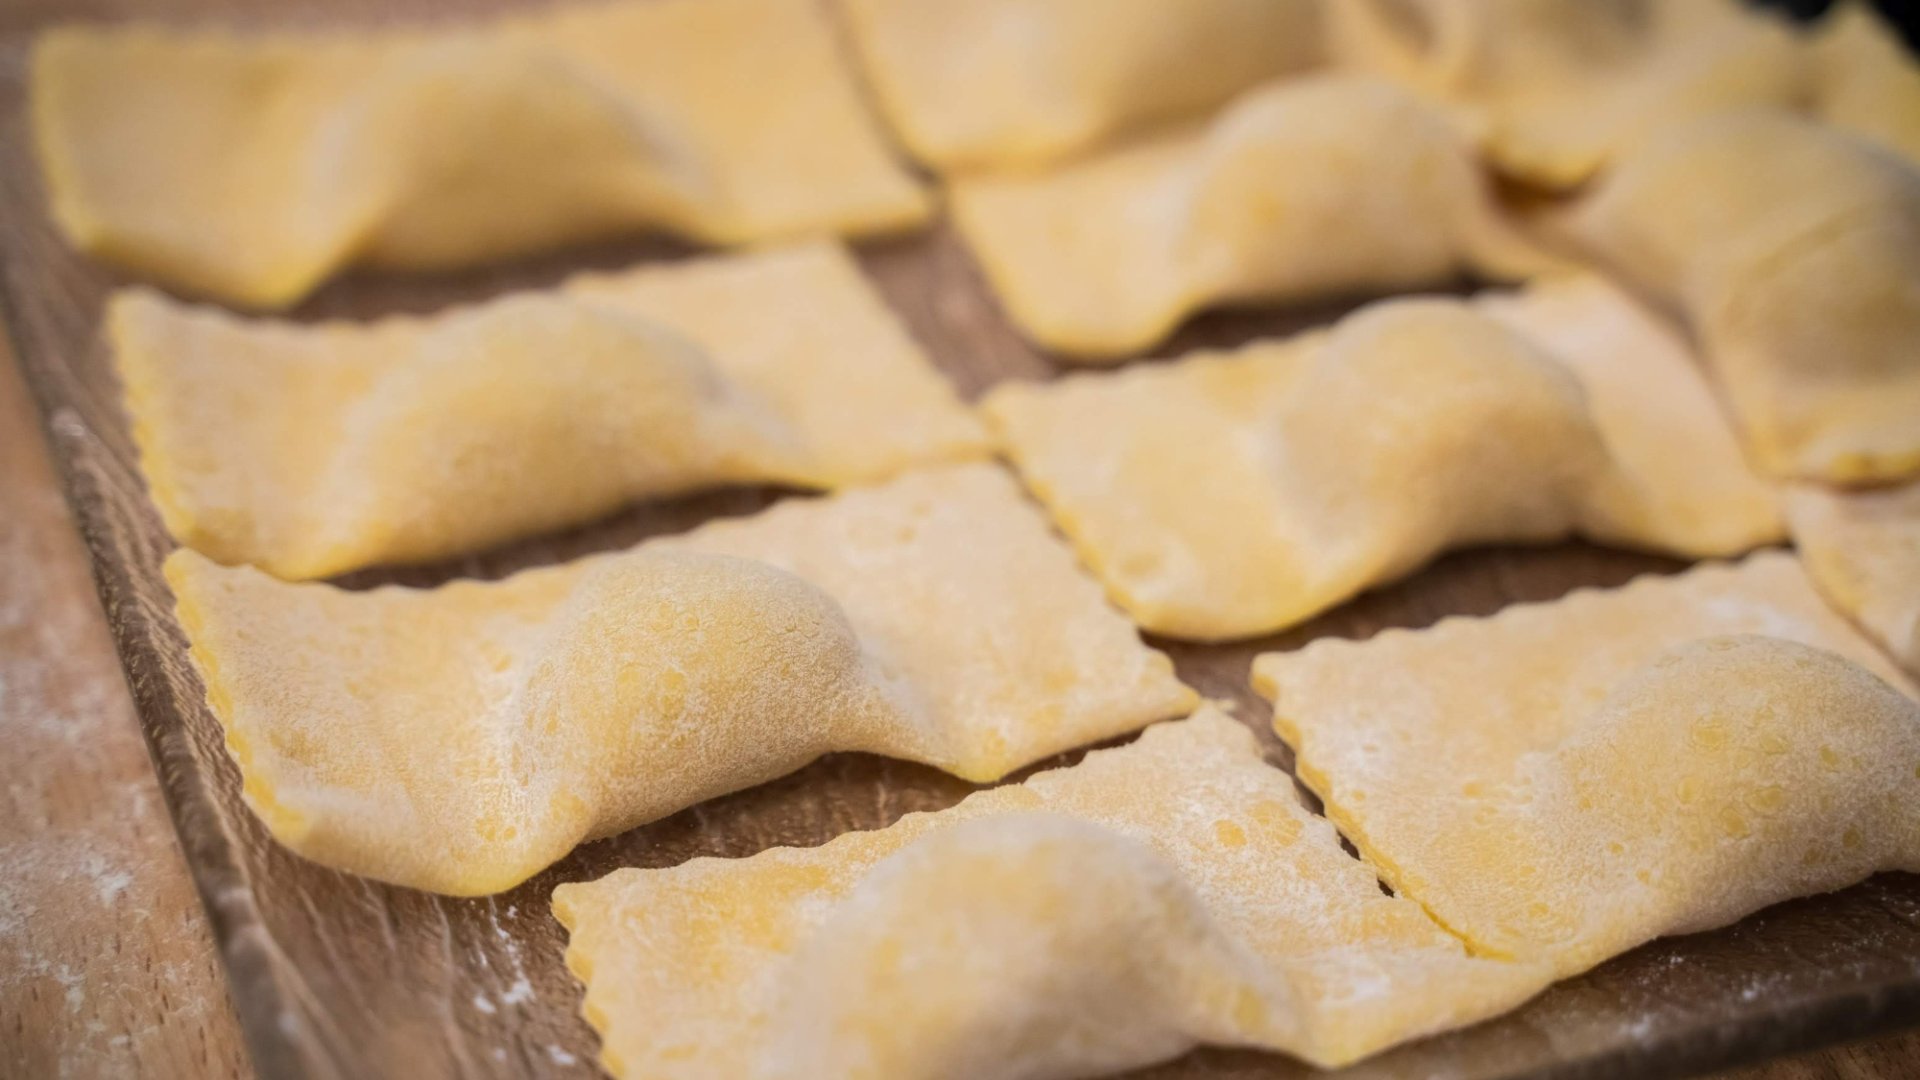 The tortelli di patate of the Mugello